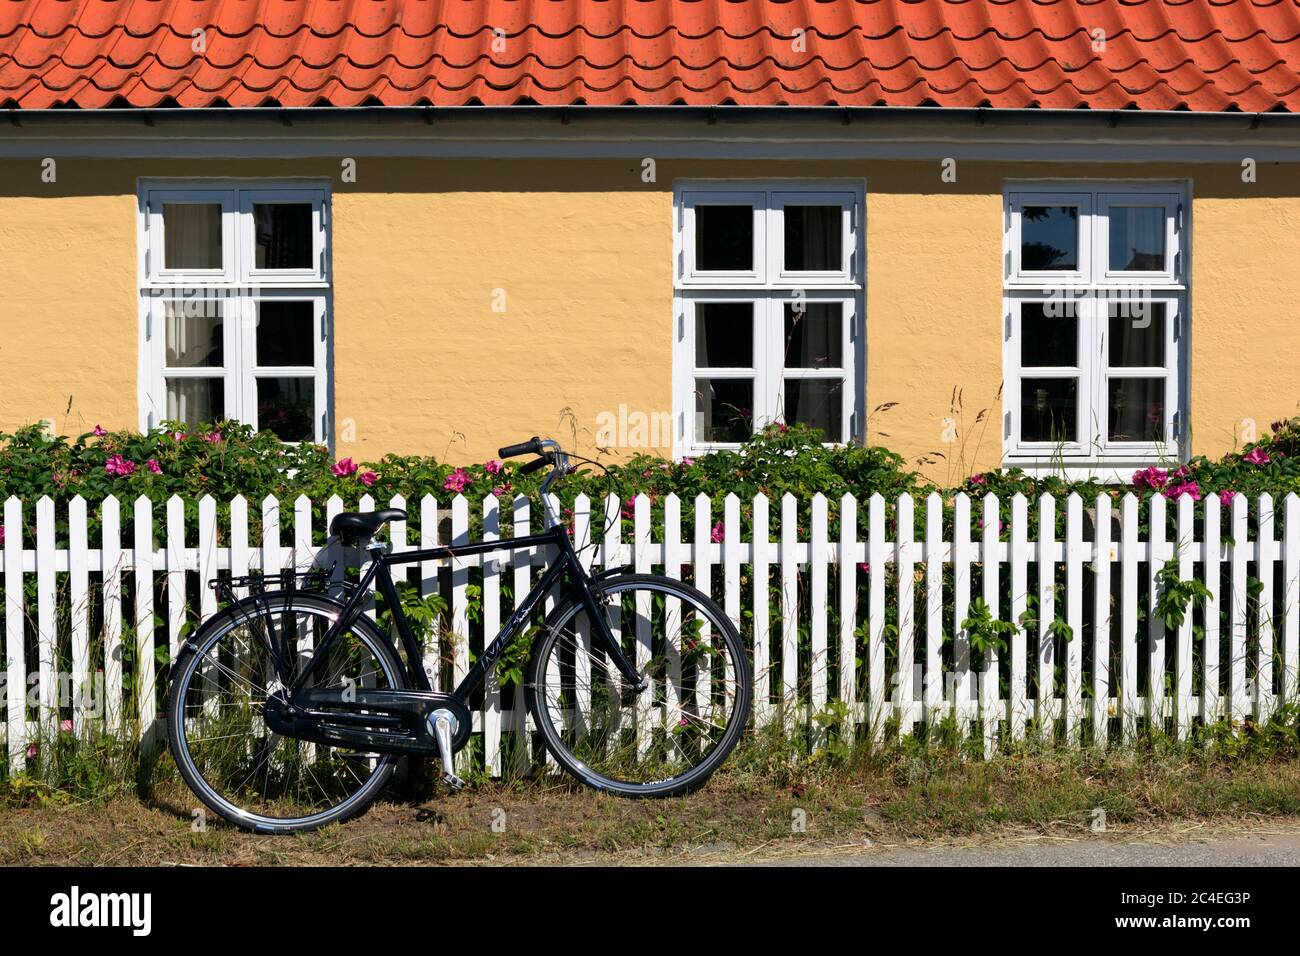 Maisons jaunes traditionnelles avec toits de tuiles rouges et clôtures de piquets blancs, Skagen, Jutland, Danemark, Europe Banque D'Images